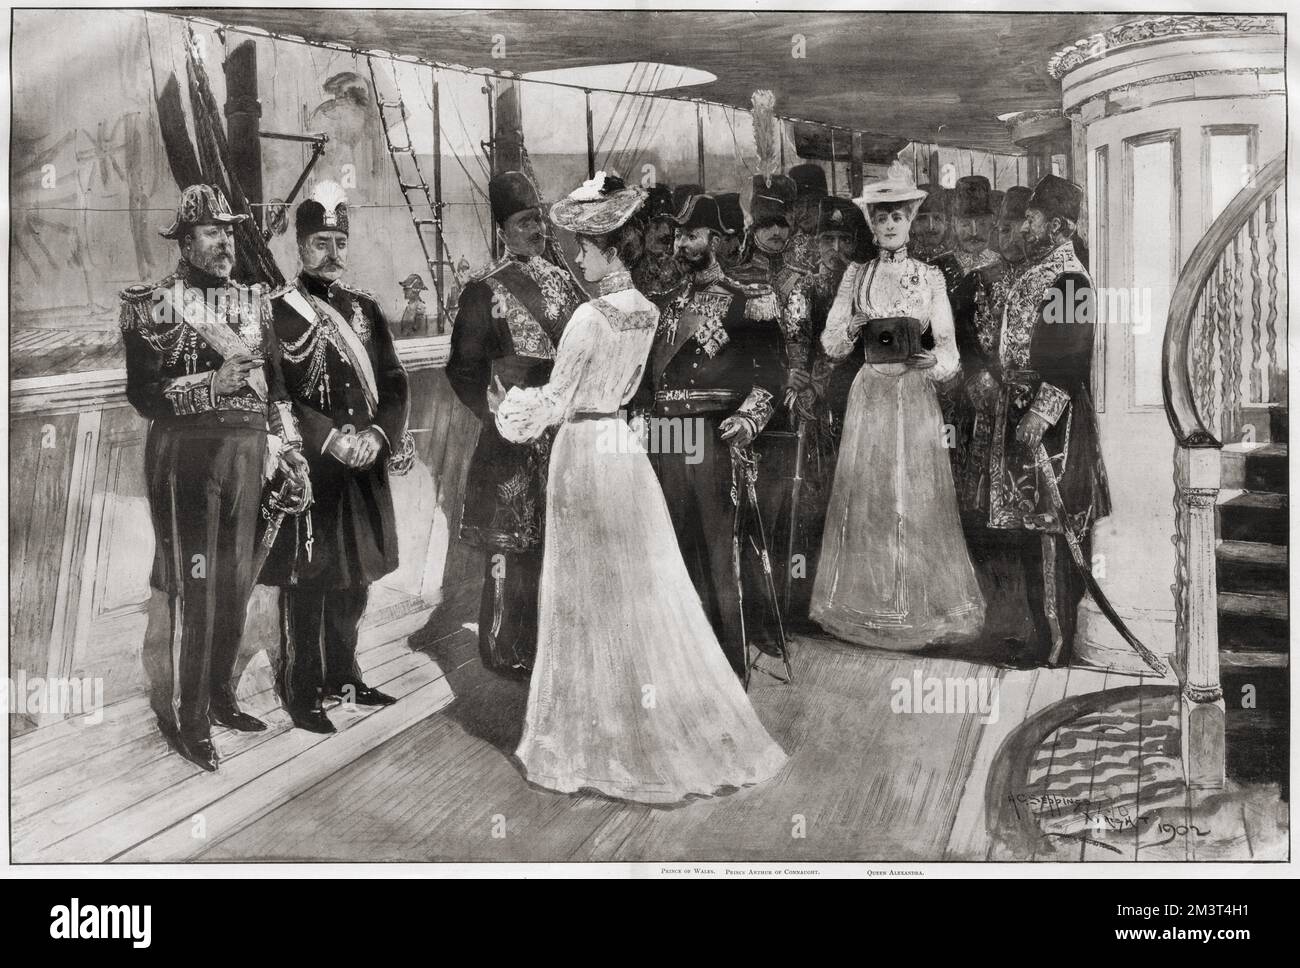 La visita di Muzaffir-ed-DIN (Mozaffar ad-DIN Shah Qajar), Shah di Persia, al re Edoardo VII a Portsmouth il 20th agosto 1902: Principessa Victoria fotografando il re e lo Shah a bordo dello Yacht reale. Anche la regina Alexandra viene mostrata usando la sua macchina fotografica. Foto Stock